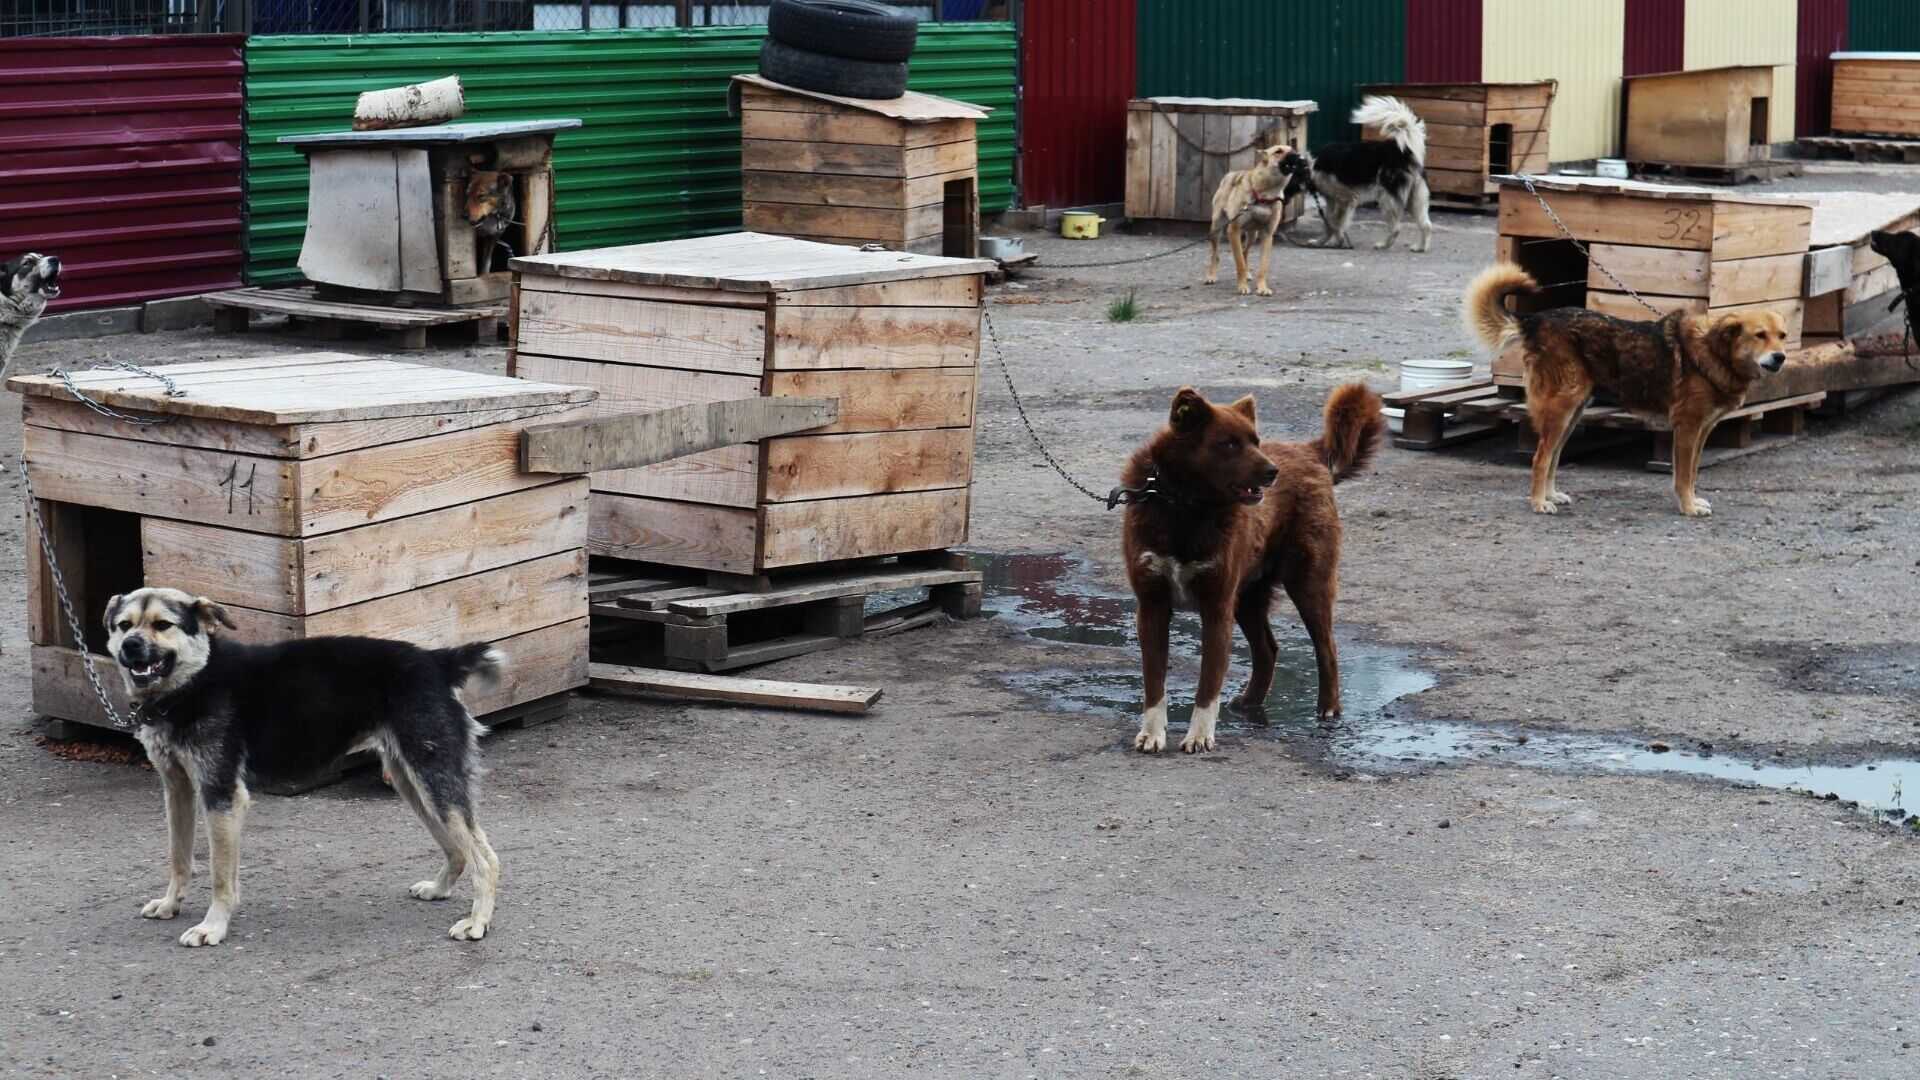 Опасный приют для собак появился во дворе в Нижнем Новгороде